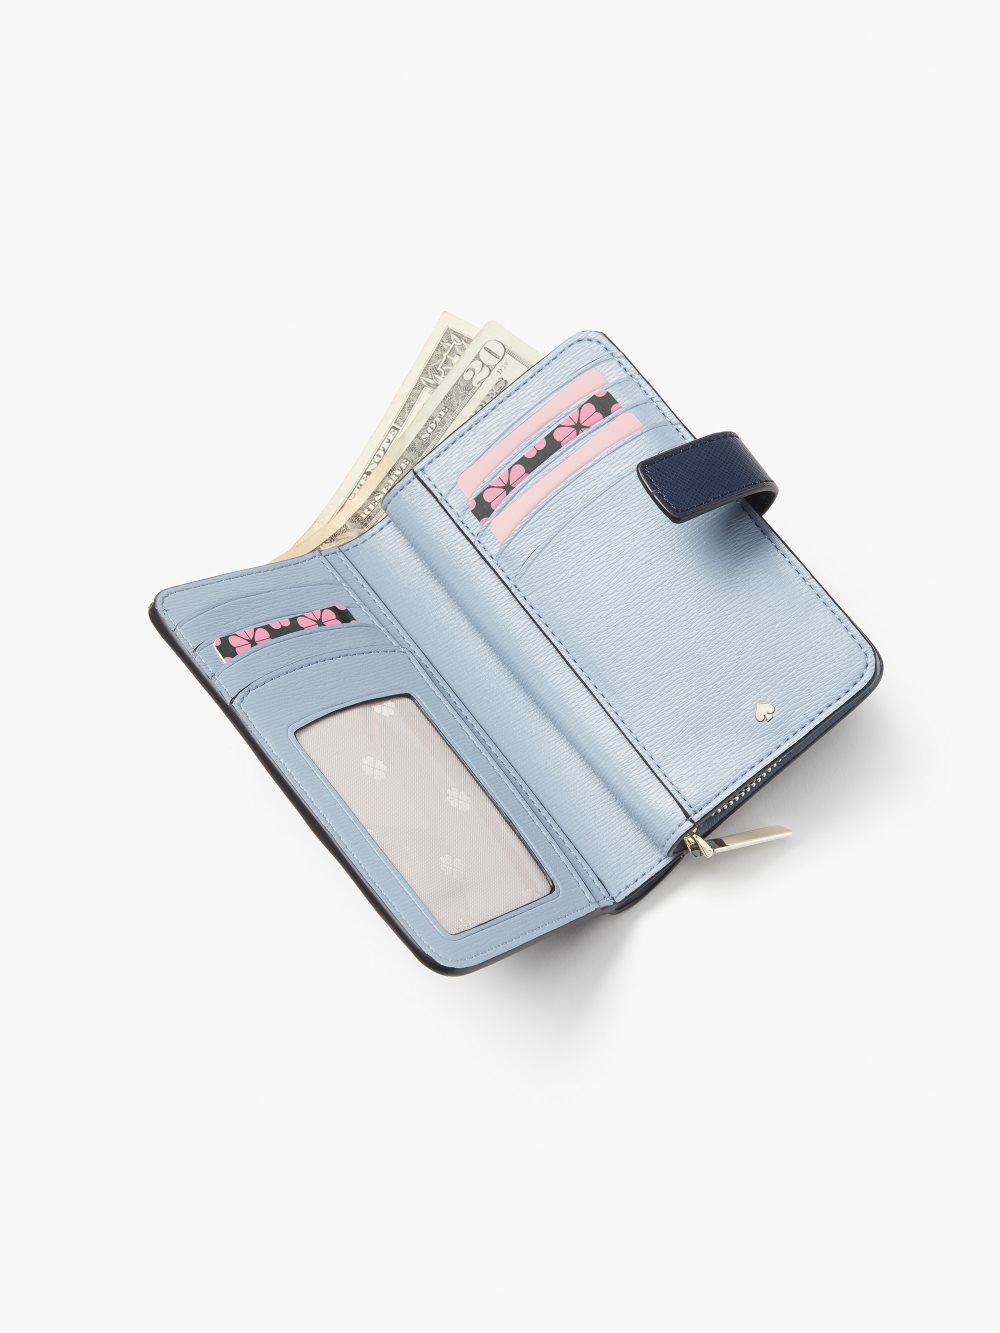 Women's violet mist spencer compact wallet | Kate Spade